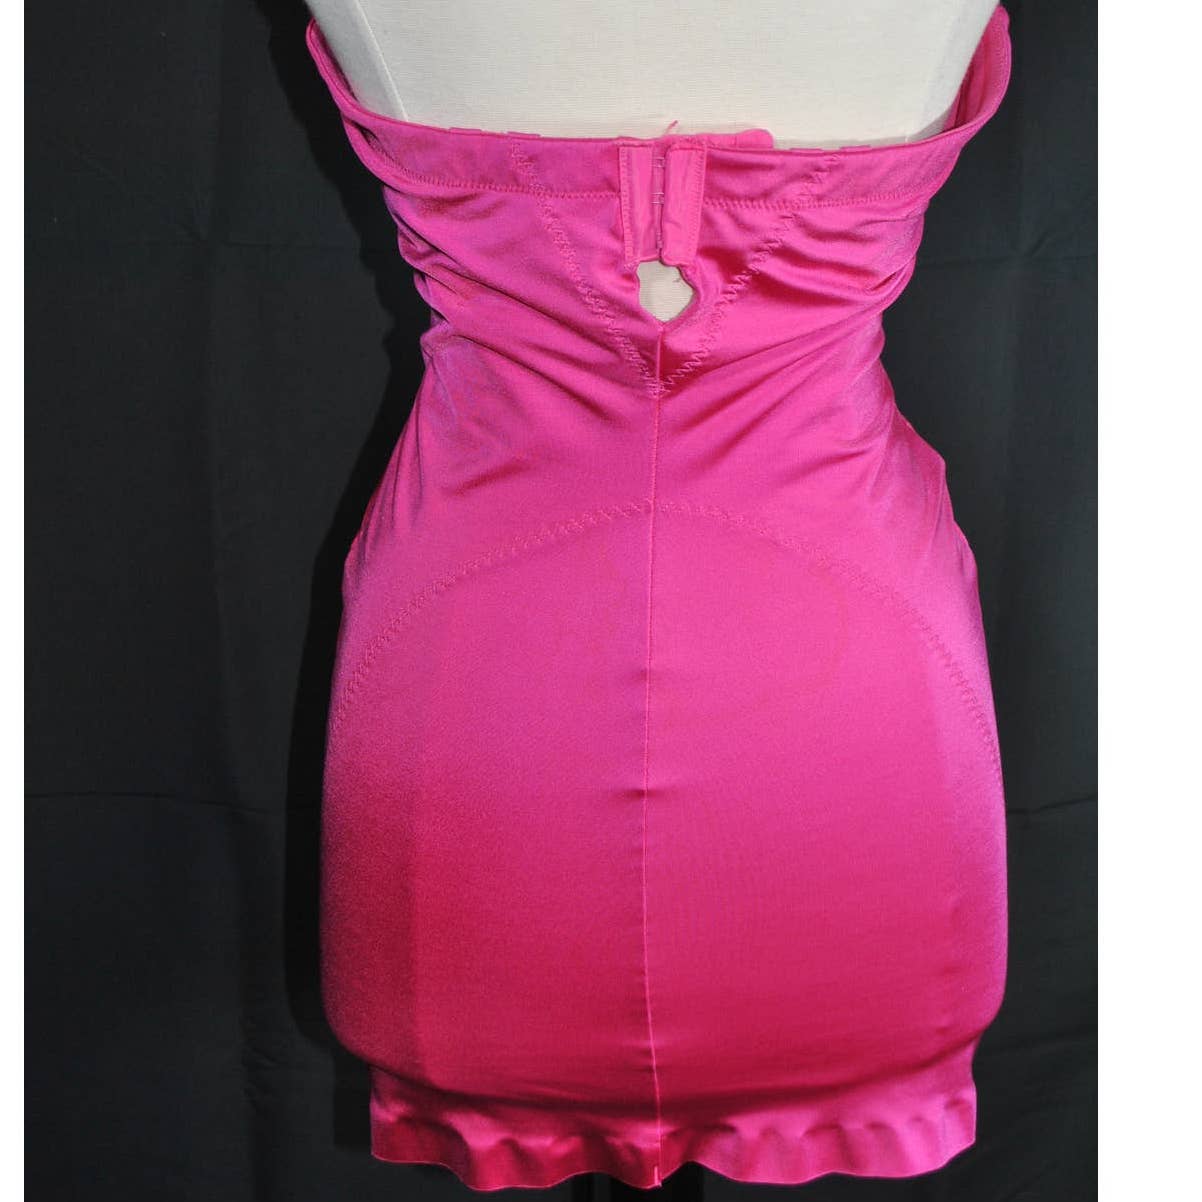 Victoria Secret Hot Pink Corset Dress- 36B